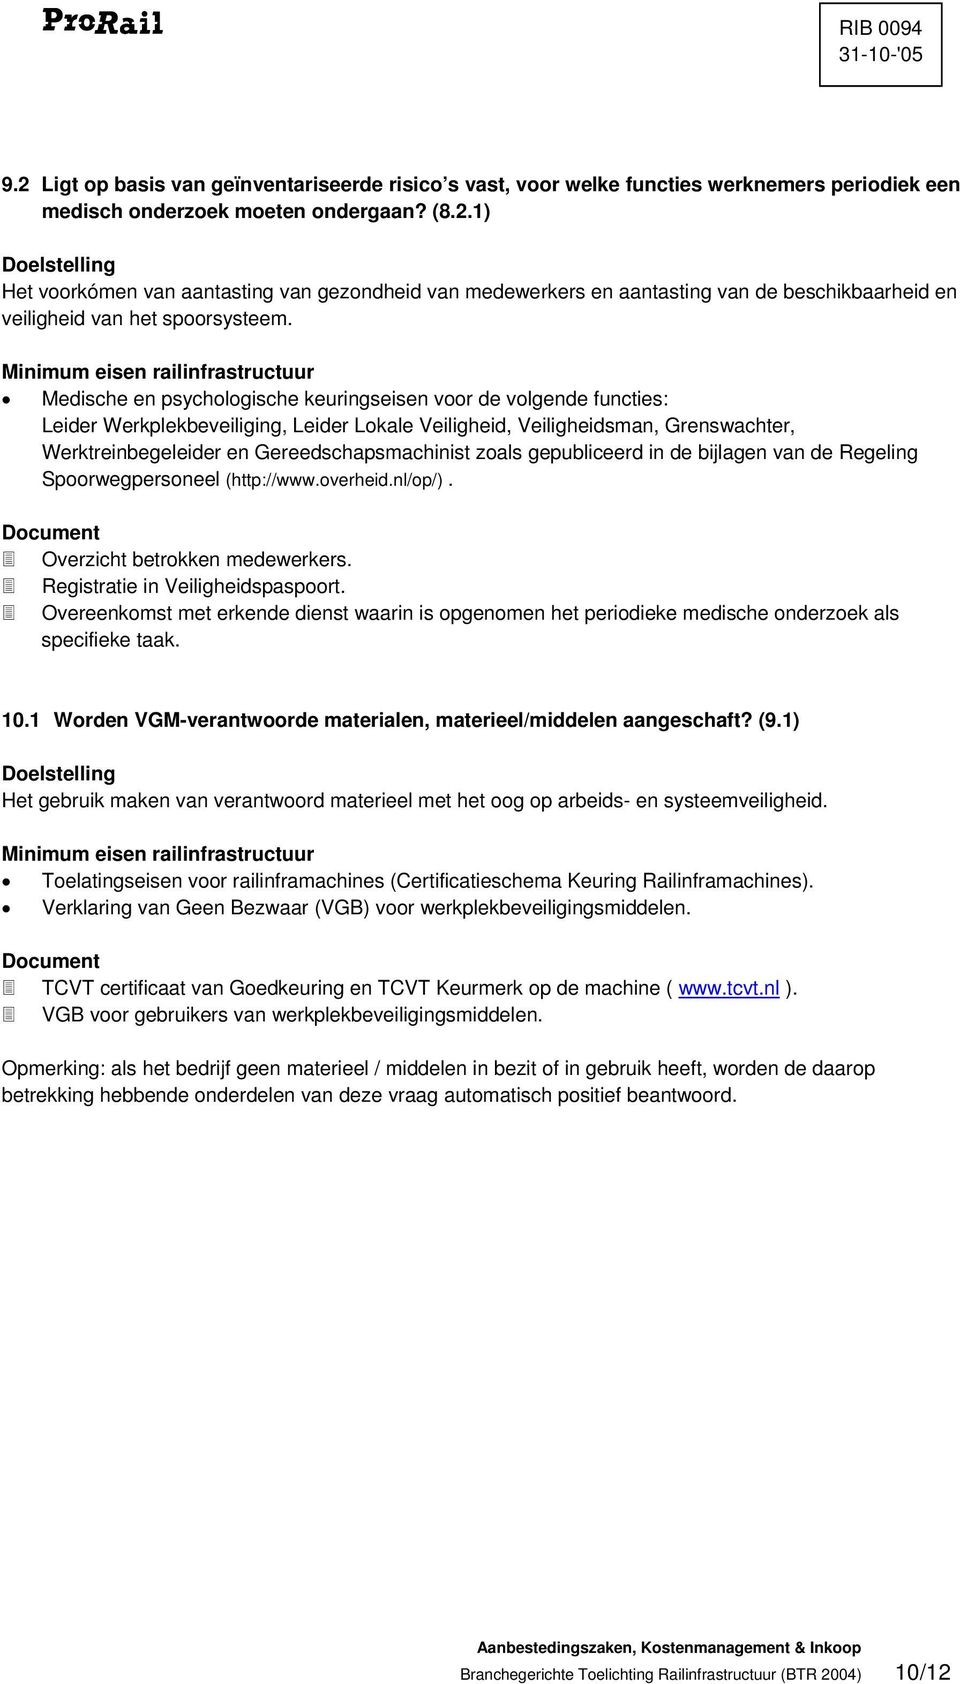 zoals gepubliceerd in de bijlagen van de Regeling Spoorwegpersoneel (http://www.overheid.nl/op/). Overzicht betrokken medewerkers. Registratie in Veiligheidspaspoort.